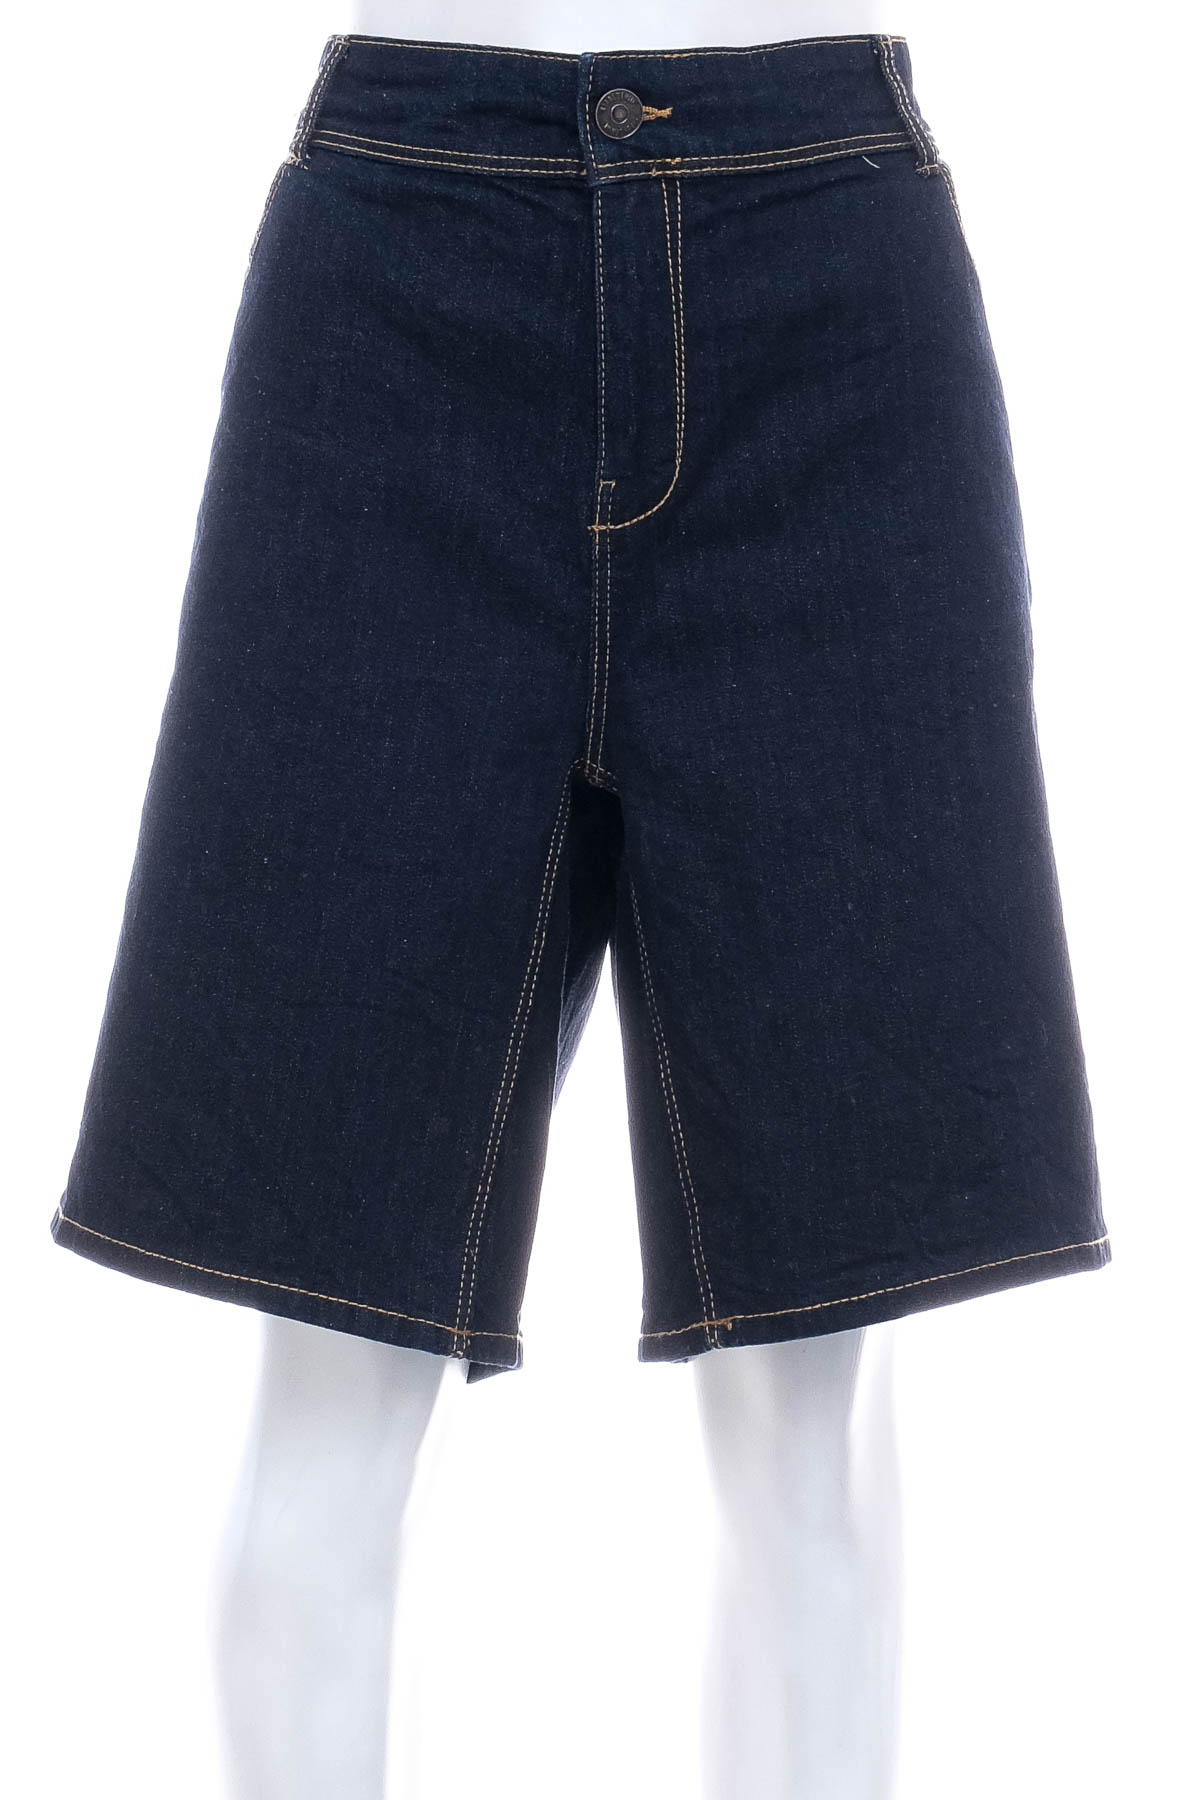 Female shorts - KIABI - 0